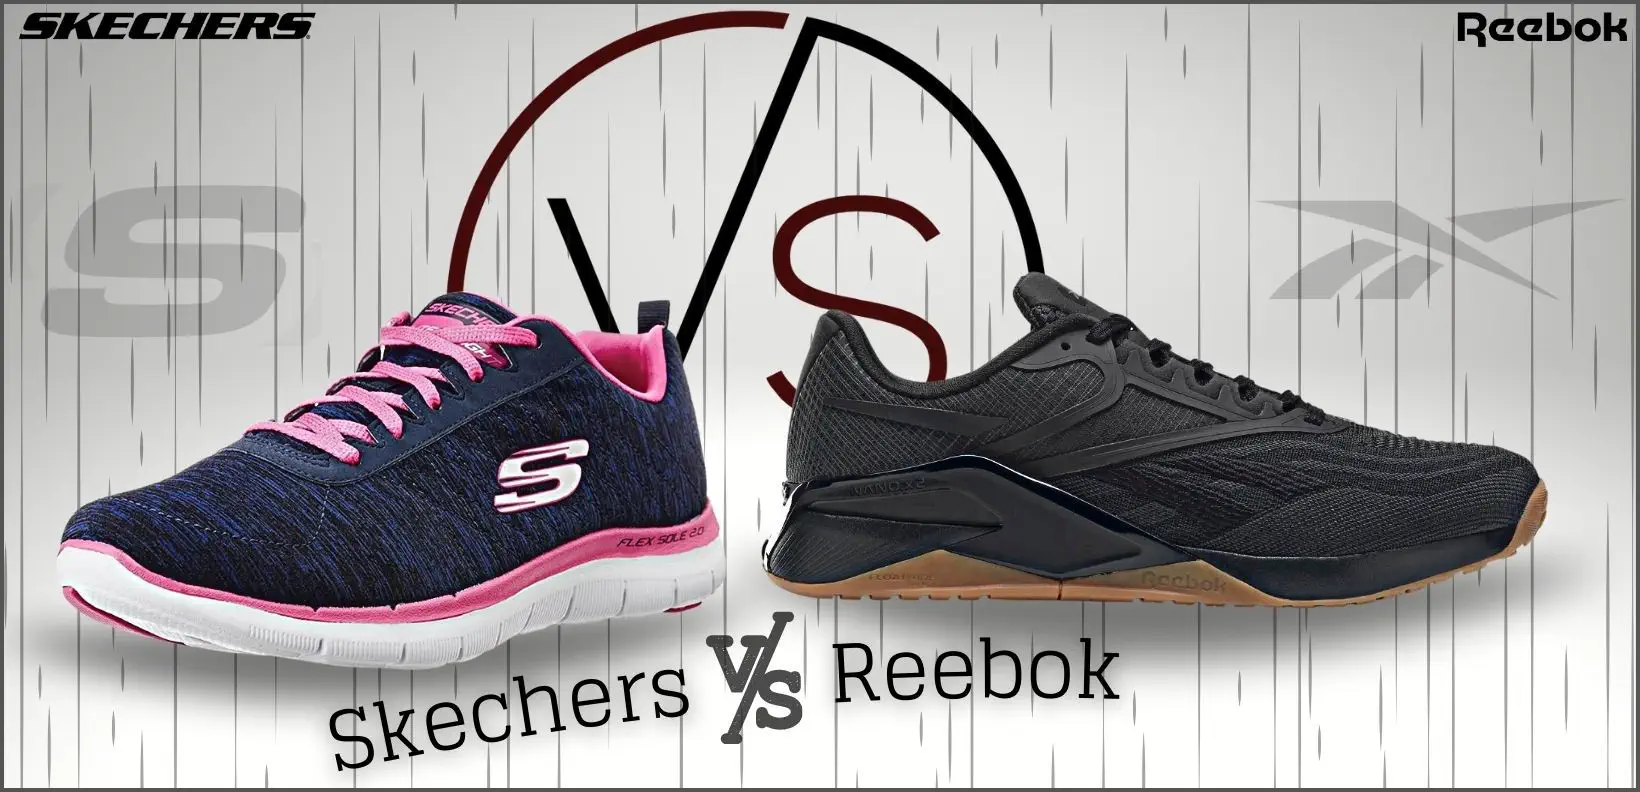 اسکچرز یا ریبوک: کدام کفش بهتر است؟